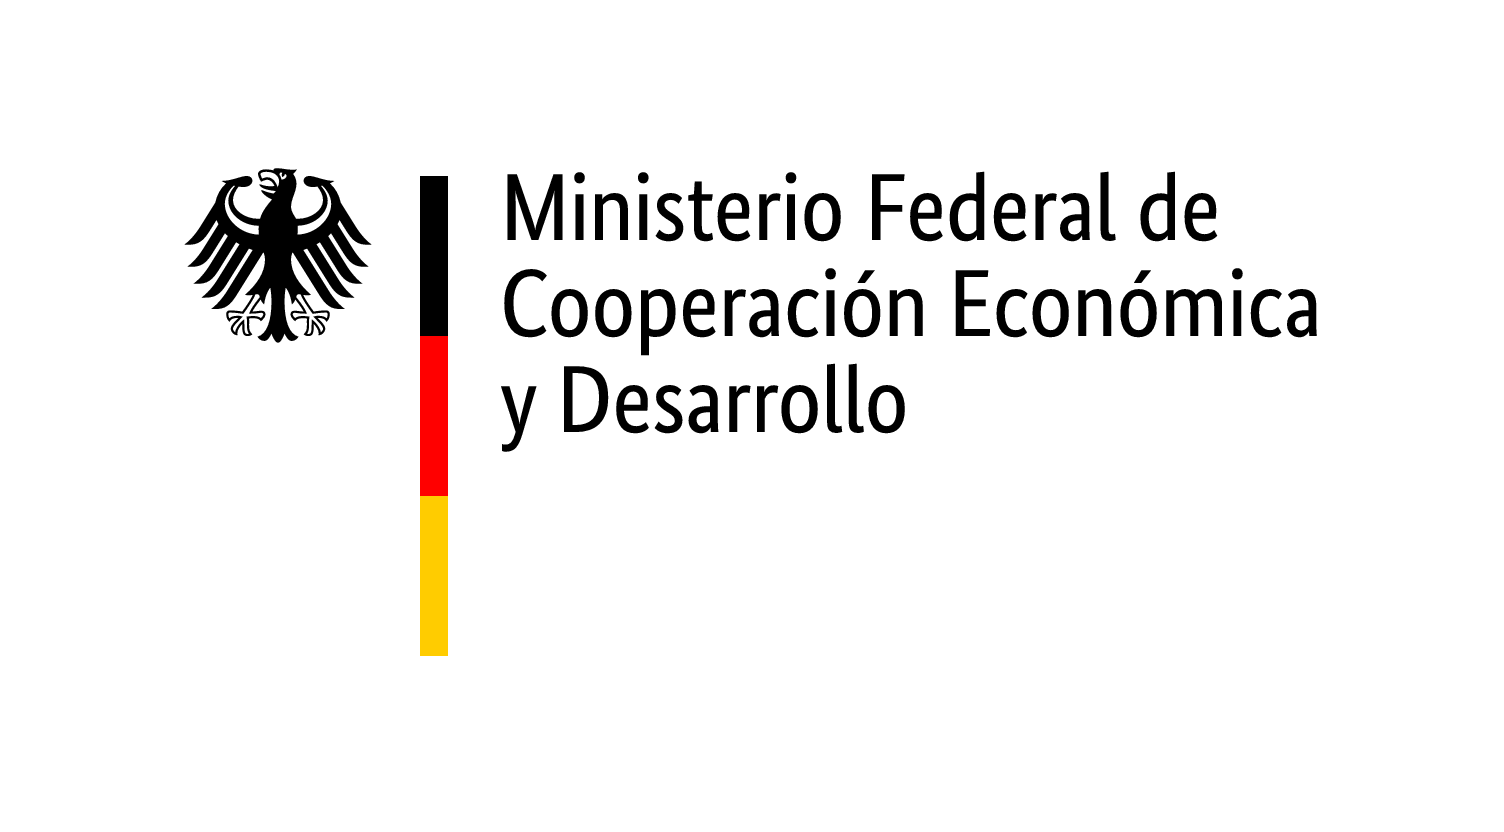 Ministerio Federal de Cooperación Económica y Desarrollo